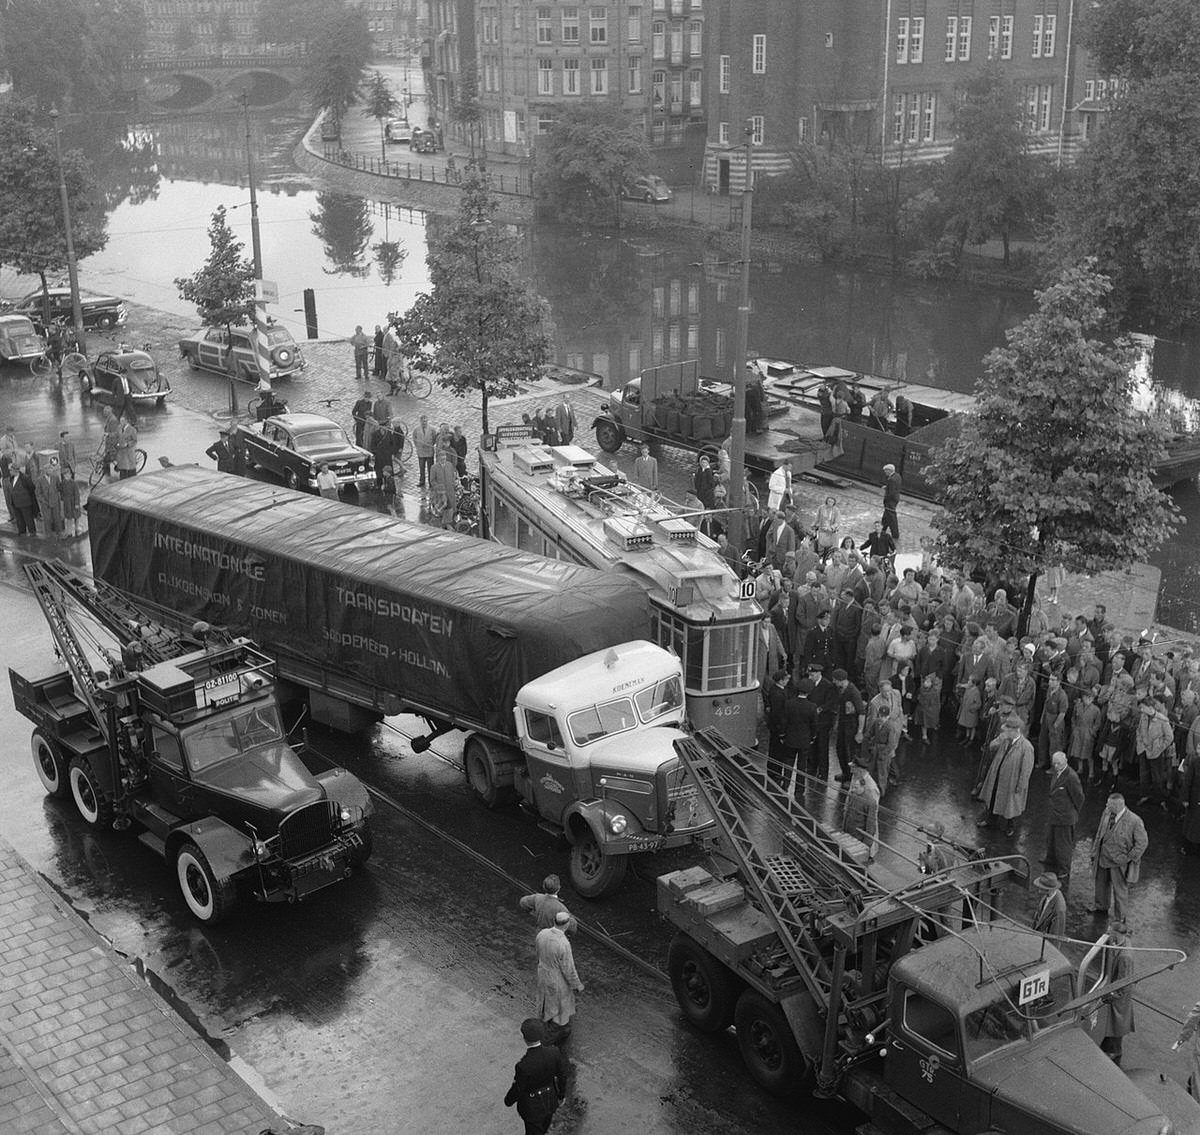 Collision of tram with truck. Koeneman & Sons Sappermeer in Amsterdam. August 3, 1956.